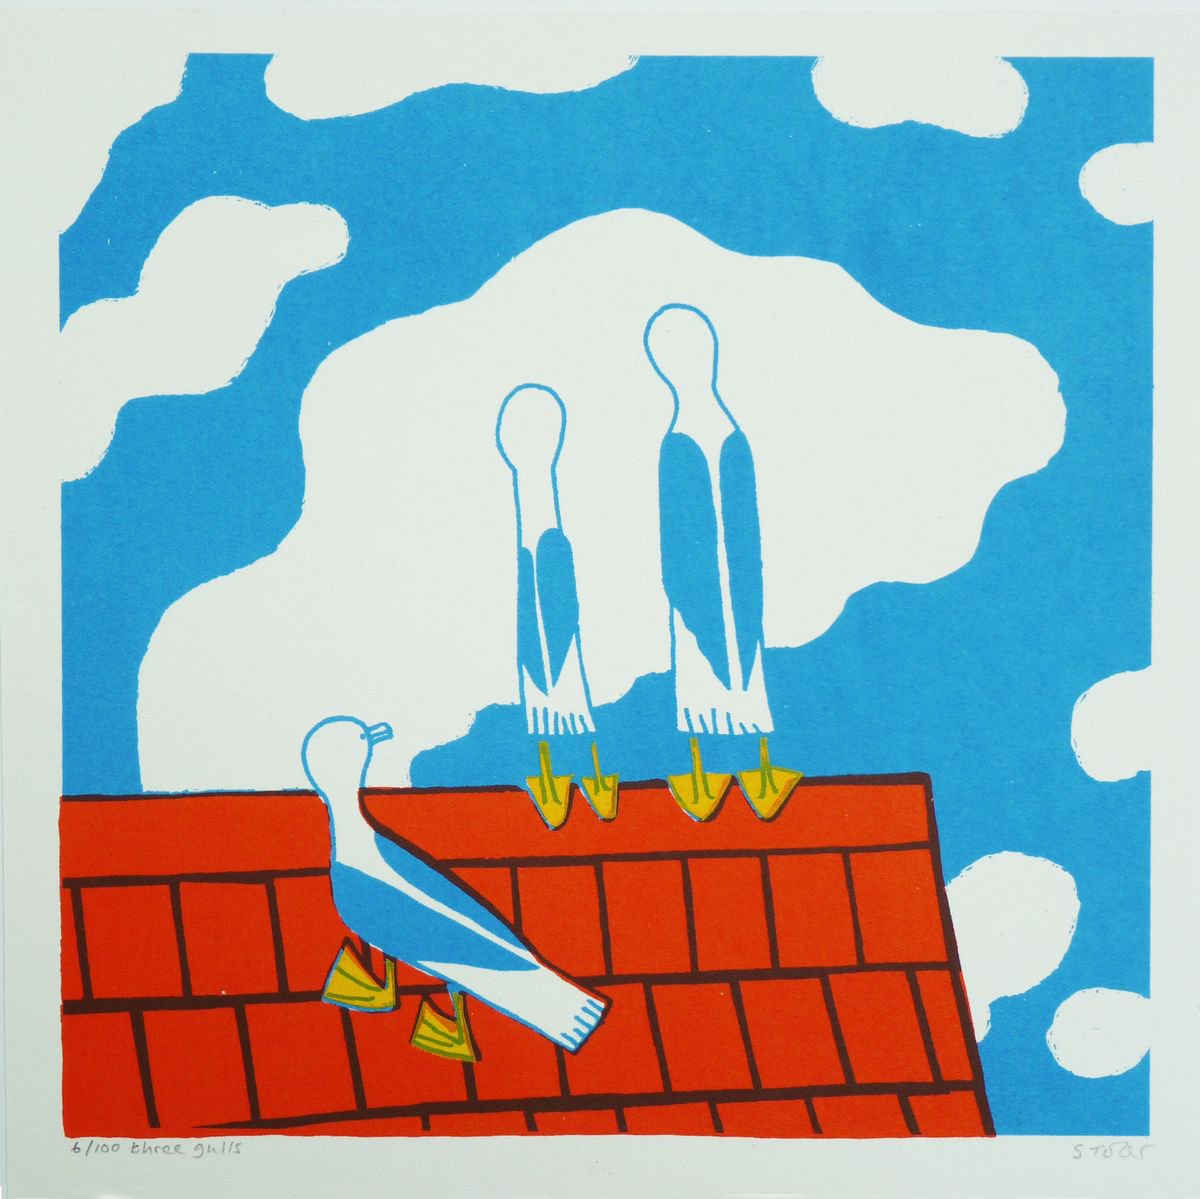 Three Seagulls by Simon Tozer